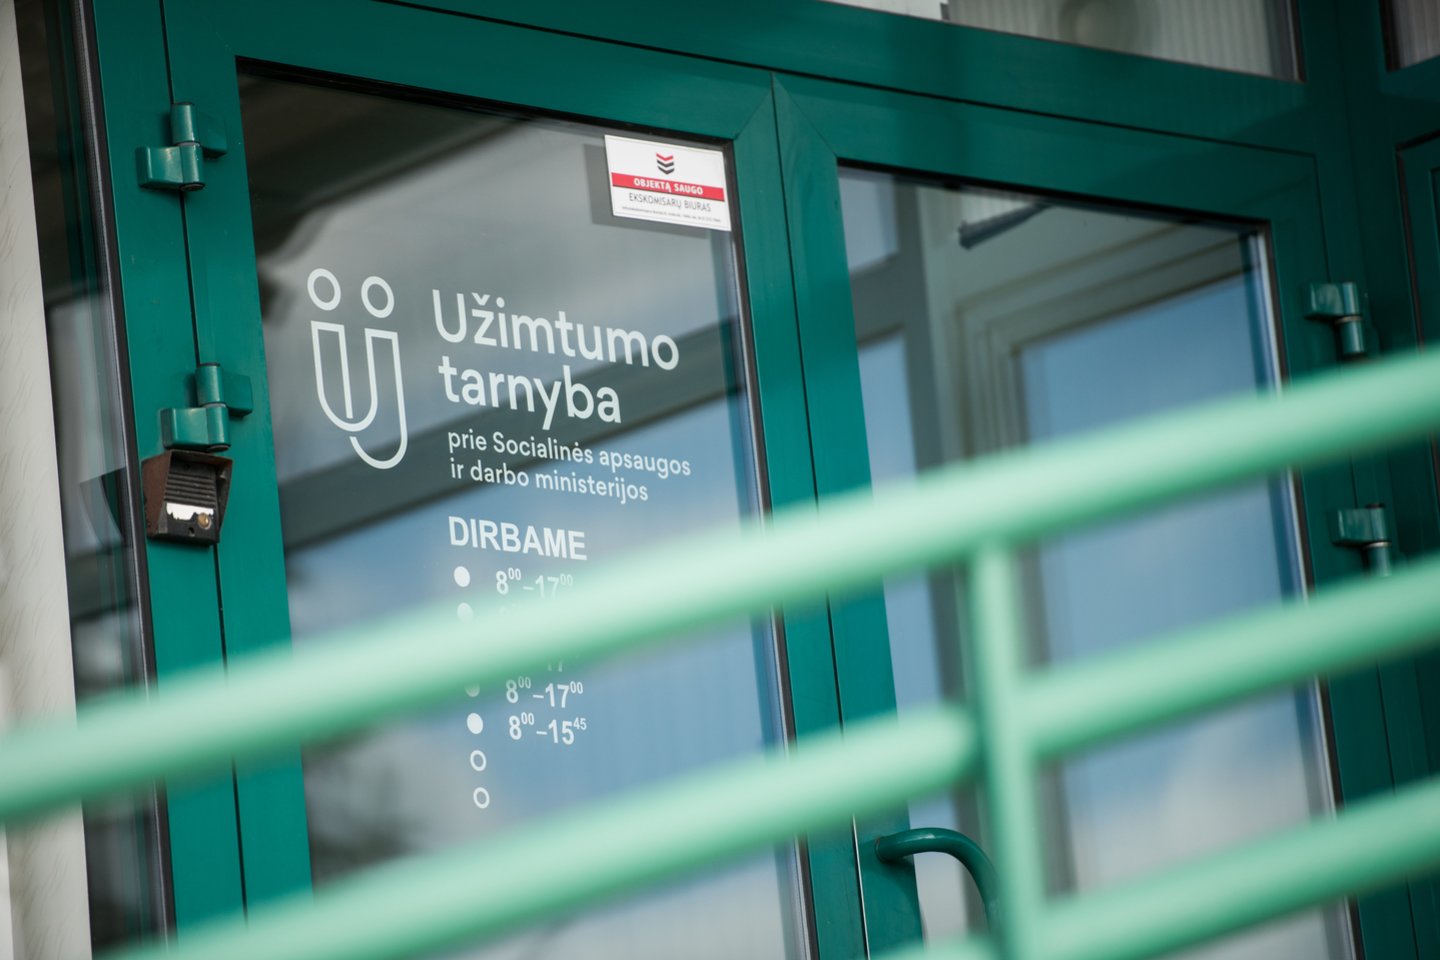 Biudžetinė įstaiga Vilniaus miesto socialinių paslaugų centras apie atleidimą įspėjo 35 darbuotojus ir lapkričio 22 dieną apie tai pranešė Užimtumo tarnybai.<br>D.Umbraso nuotr.